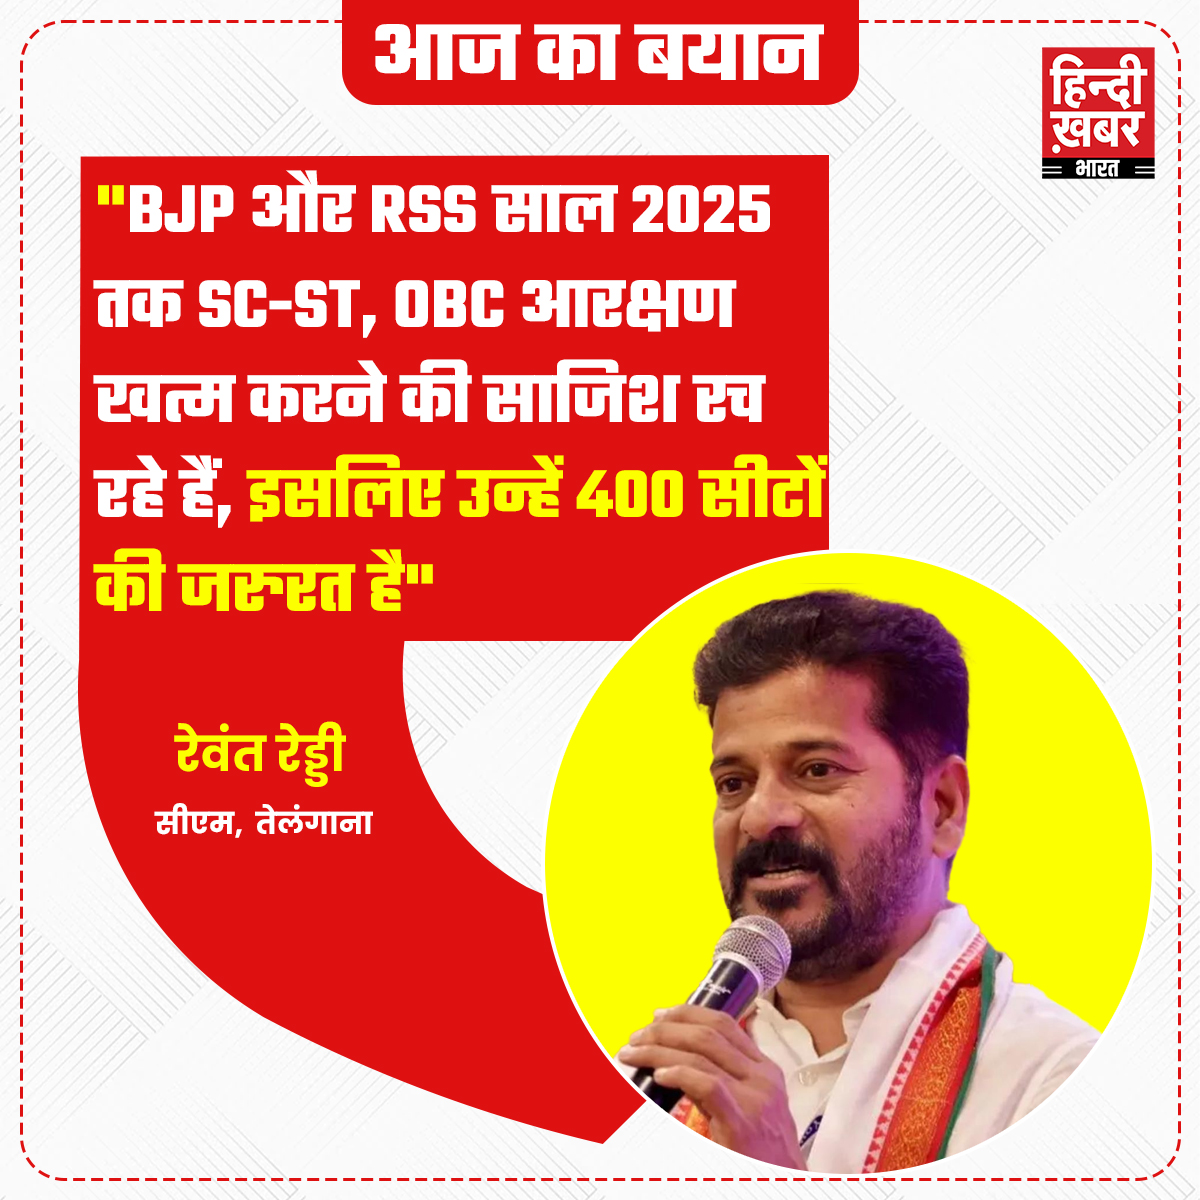 मोदी सरकार के अबकी बार 400 पार के नारे पर कटाक्ष करते हुए तेलंगाना के हैदराबाद में TPCP मुख्यालय के अंदर कांग्रेस सरकार के सीएम रेवंत रेड्डी ने गुरुवार (25 अप्रैल) को कहा कि BJP और RSS साल 2025 तक SC-ST, OBC आरक्षण खत्म करने की साजिश रच रहे हैं. उन्होंने कहा कि इसके लिए BJP…